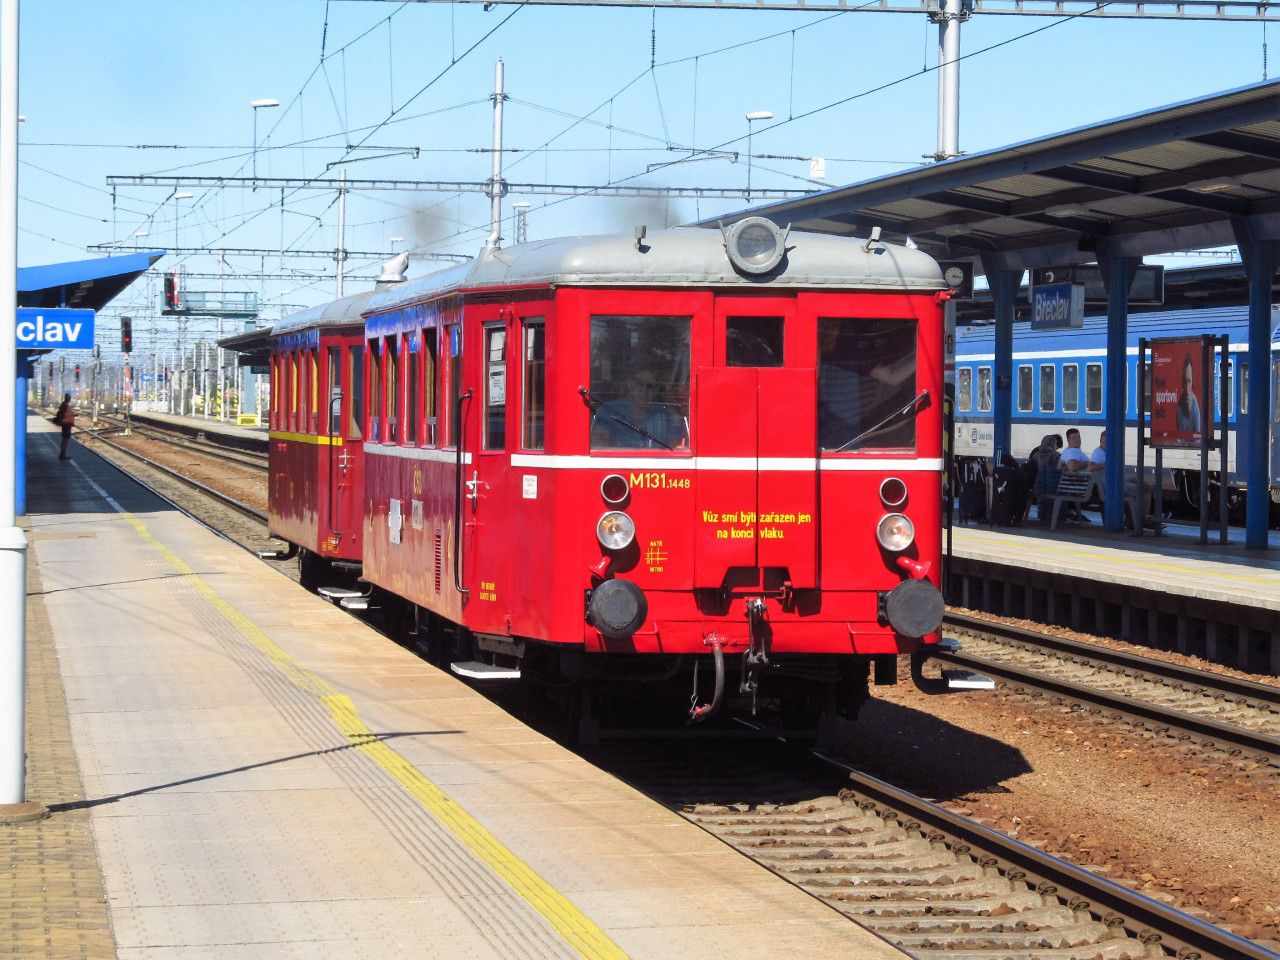 ... vlak do Lednice (posledn spoj v rmci dne) ekal +7 na EC z SK, ale ne na EC od Prahy